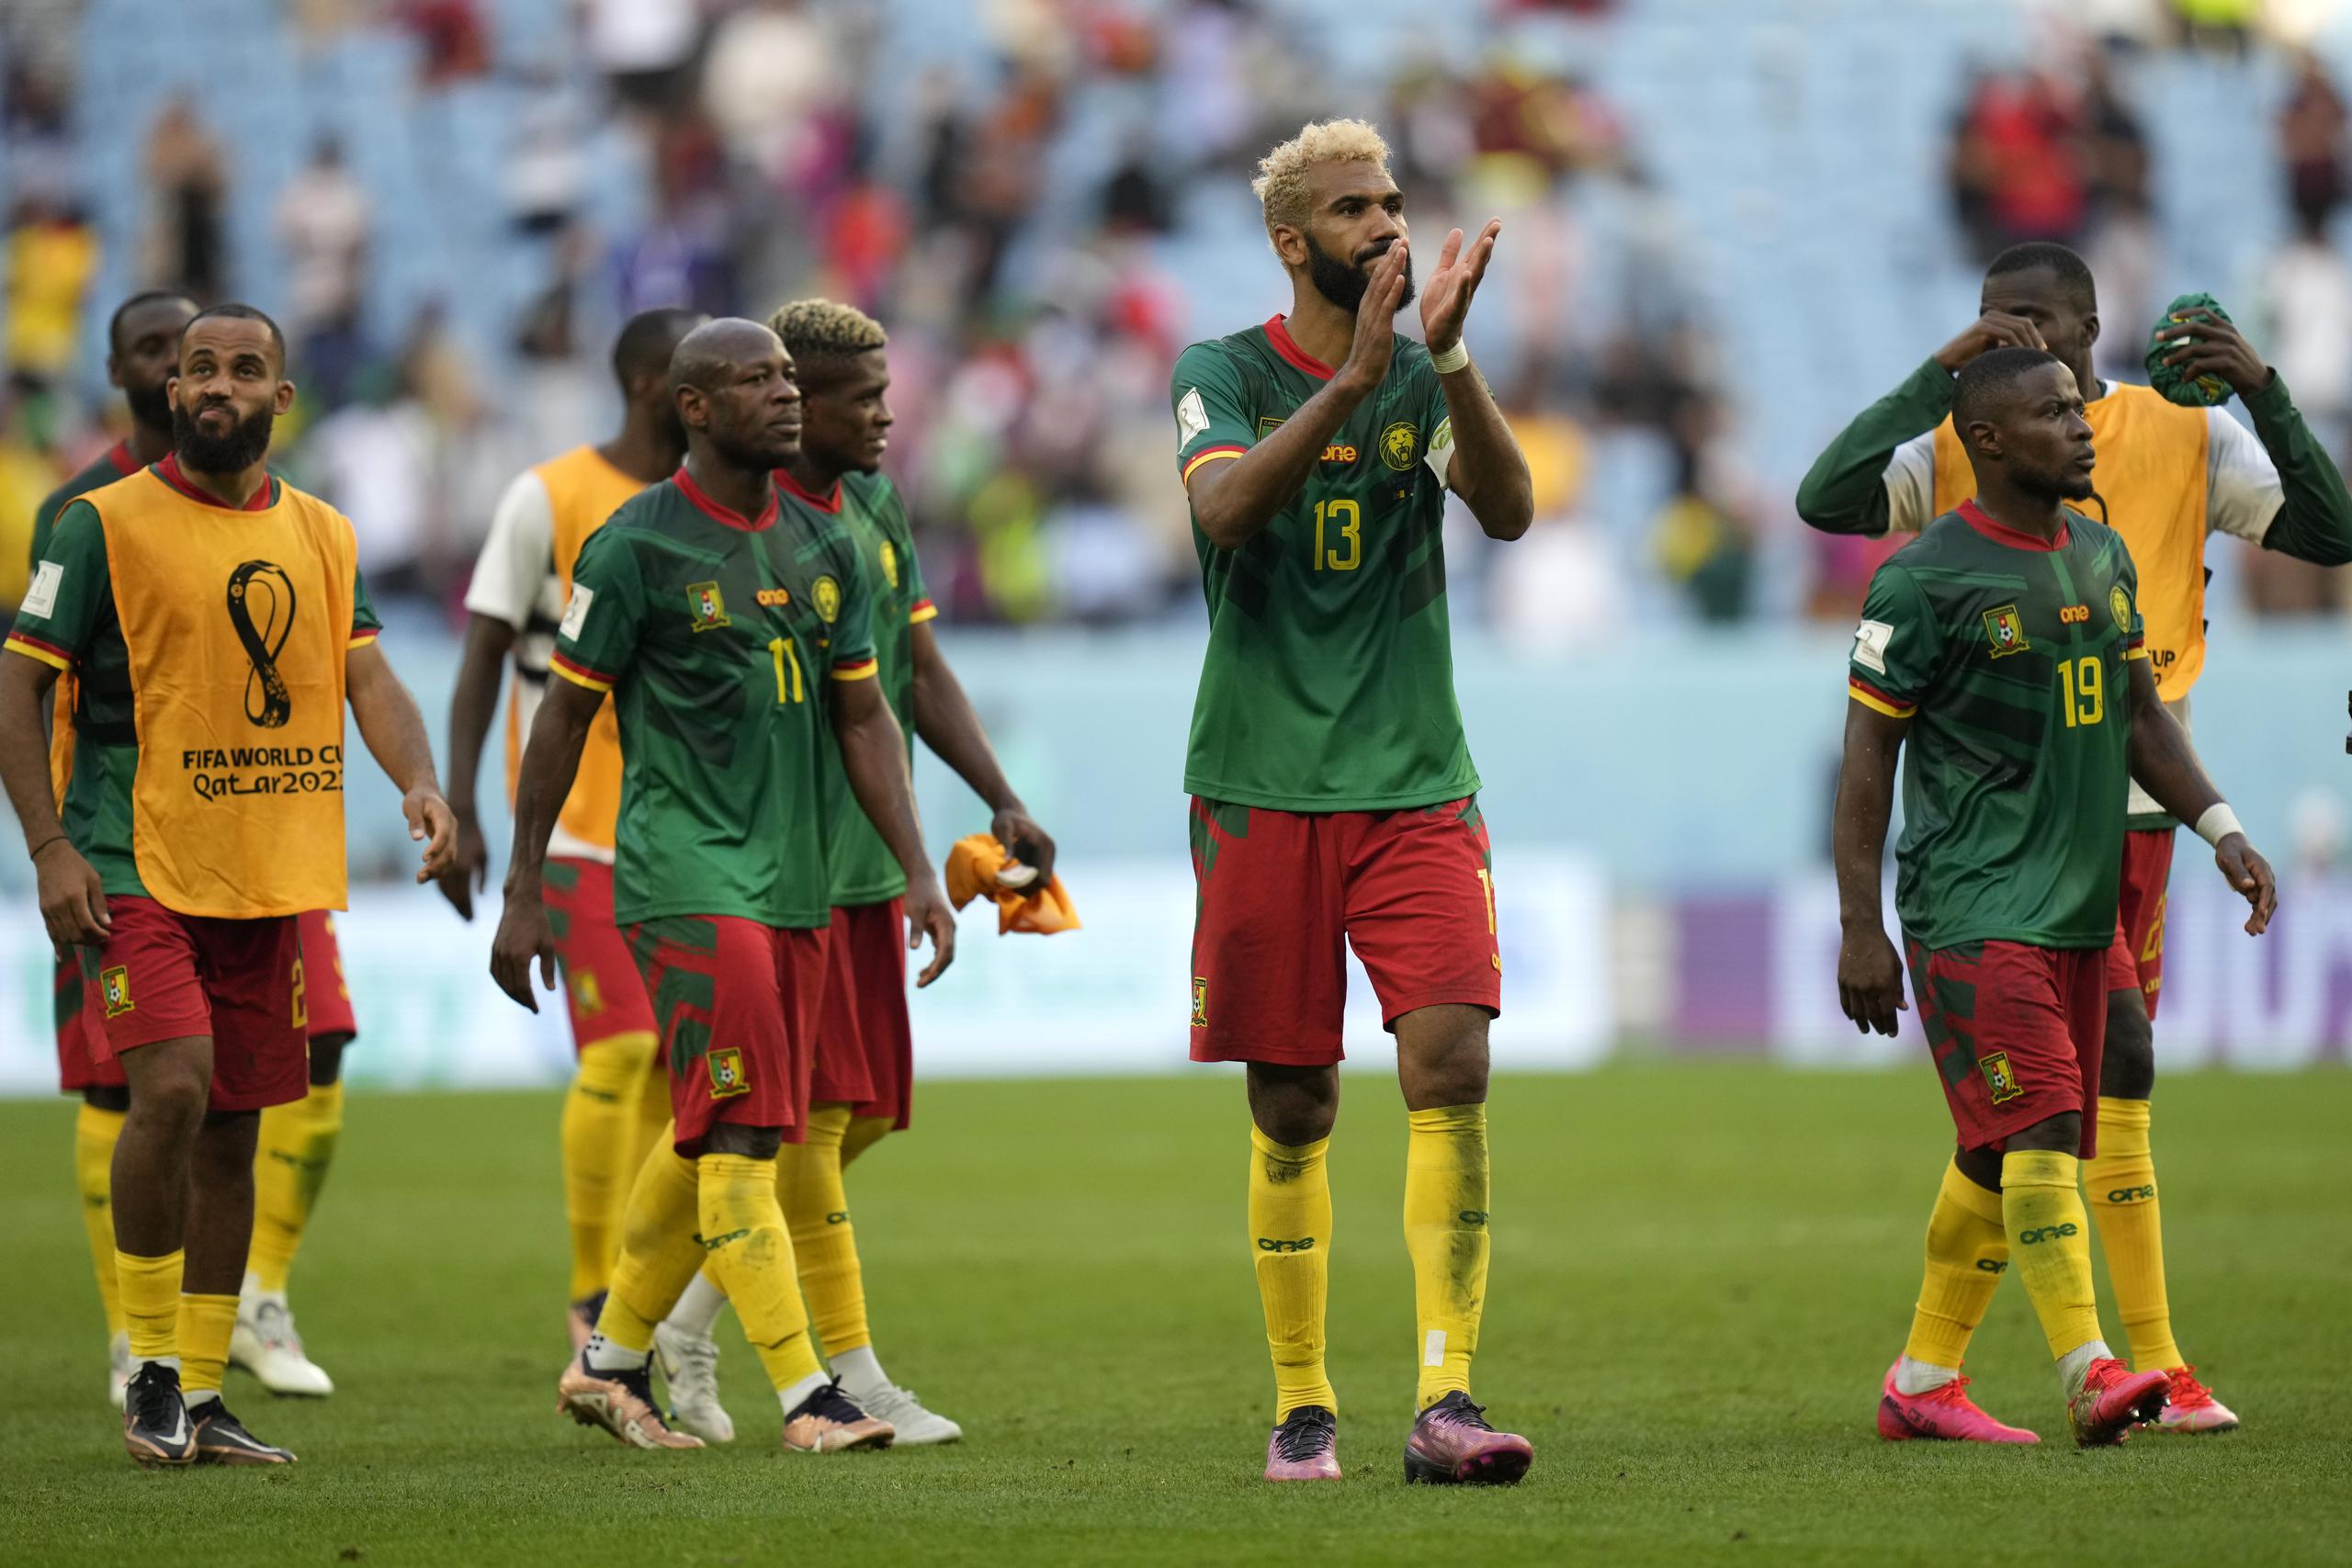 Los jugadores de Camerún aplauden al final de su partido del Grupo G del Mundial entre Camerún y Serbia, en el estadio Al Janoub en Al Wakrah, Qatar, el 28 de noviembre de 2022. (AP Foto/Francisco Seco)